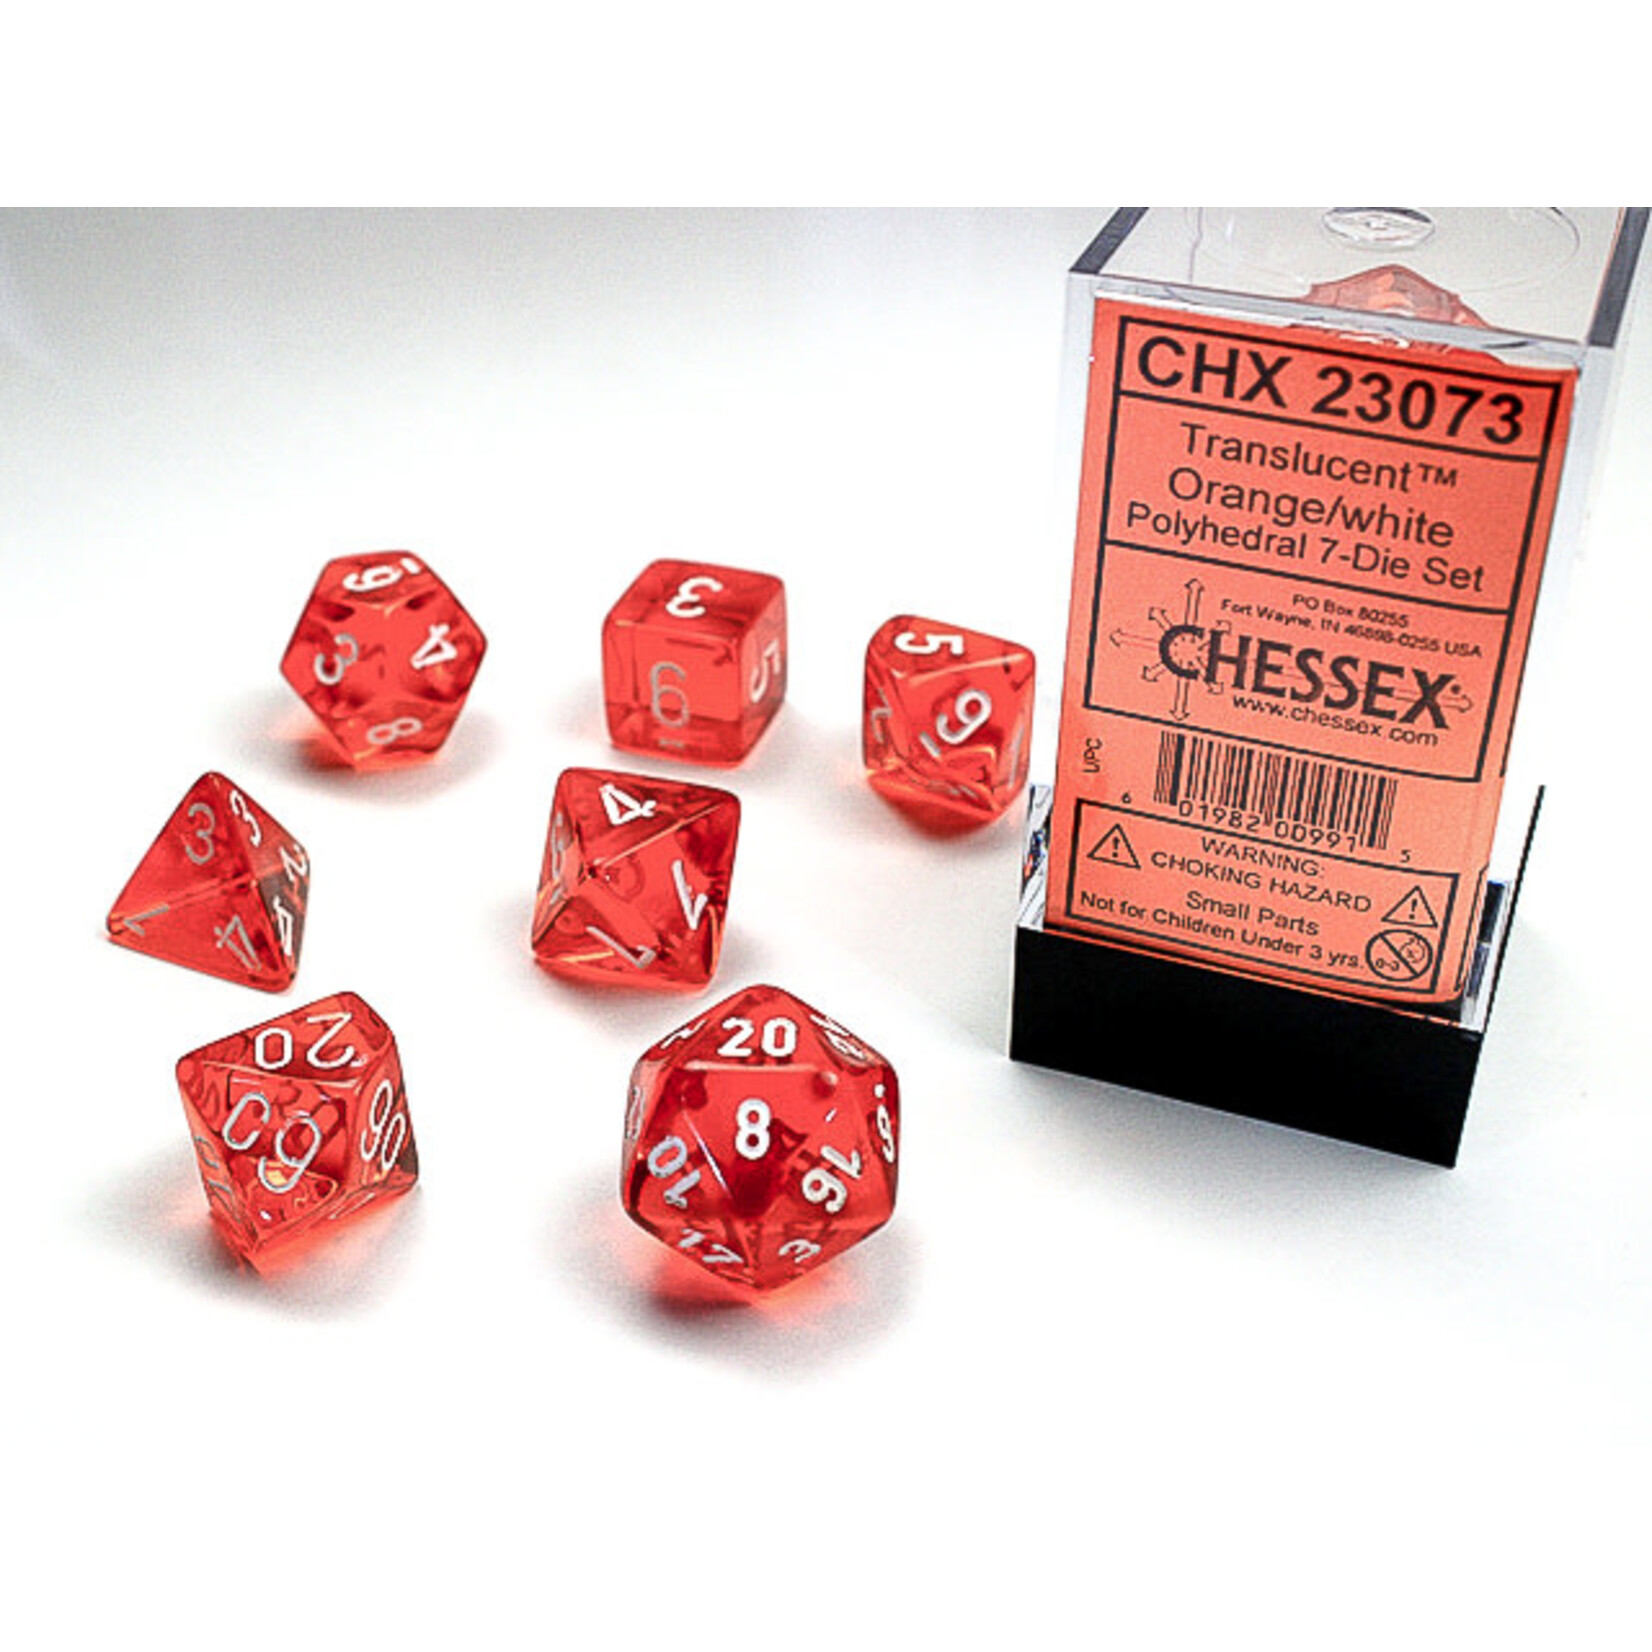 Chessex Translucent Polyhedral Orange/white 7-Die Set